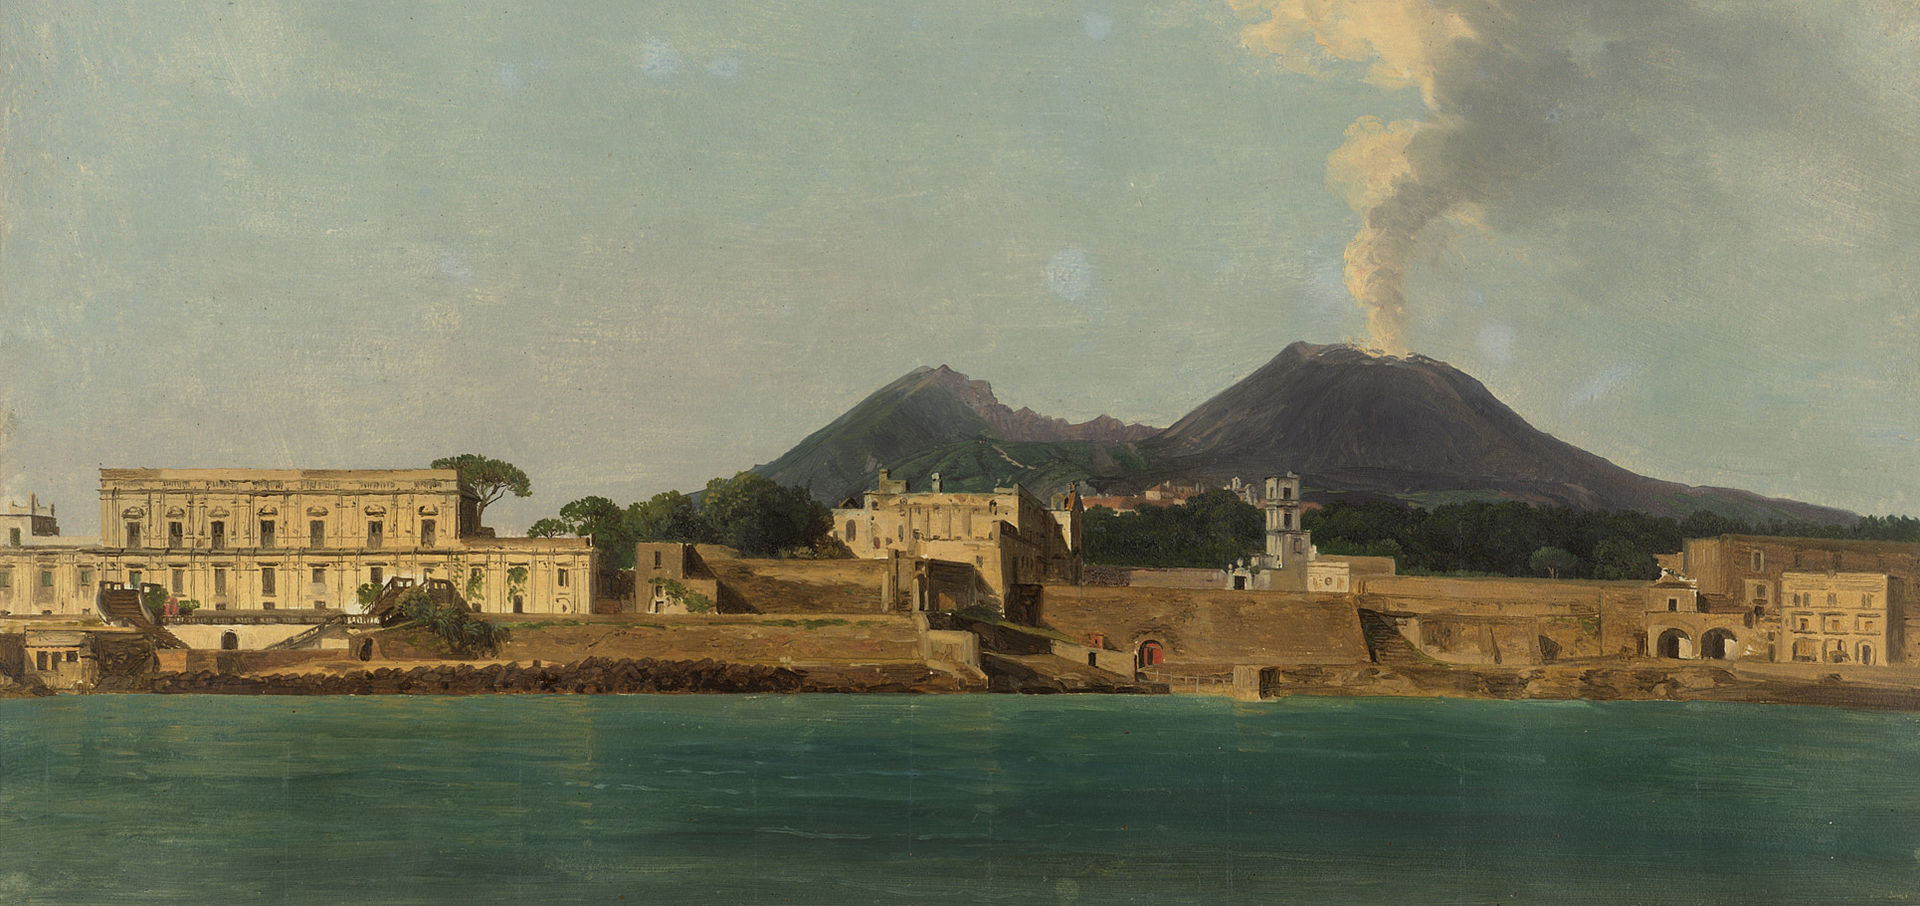 Gemälde des Hafens von Neapel mit dem rauchenden Vesuv im Hintergrund